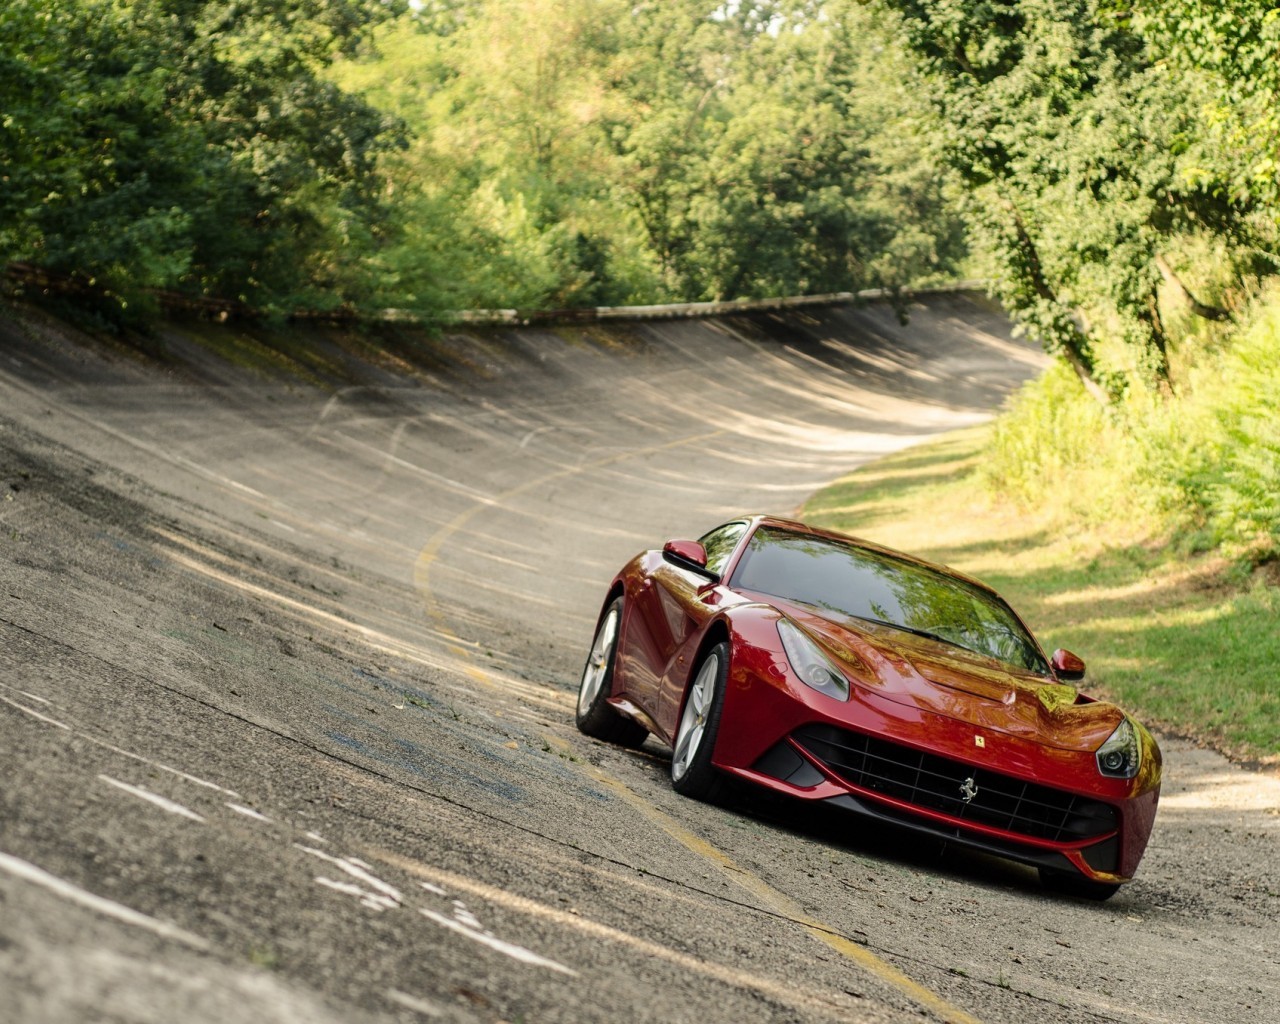 Download mobile wallpaper Transport, Roads, Auto, Ferrari for free.